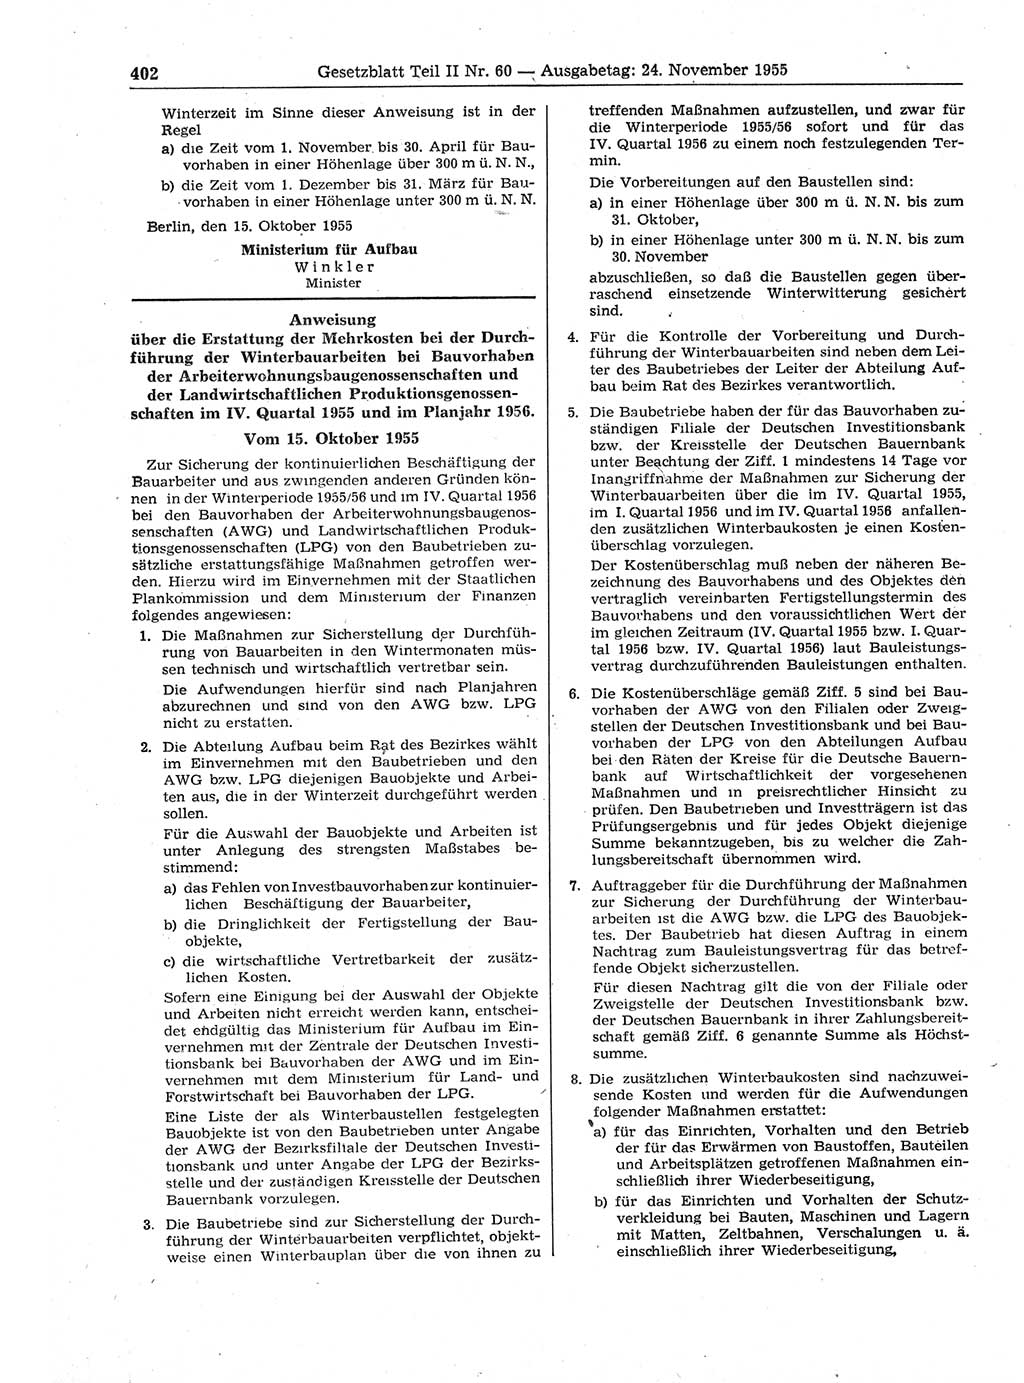 Gesetzblatt (GBl.) der Deutschen Demokratischen Republik (DDR) Teil ⅠⅠ 1955, Seite 402 (GBl. DDR ⅠⅠ 1955, S. 402)